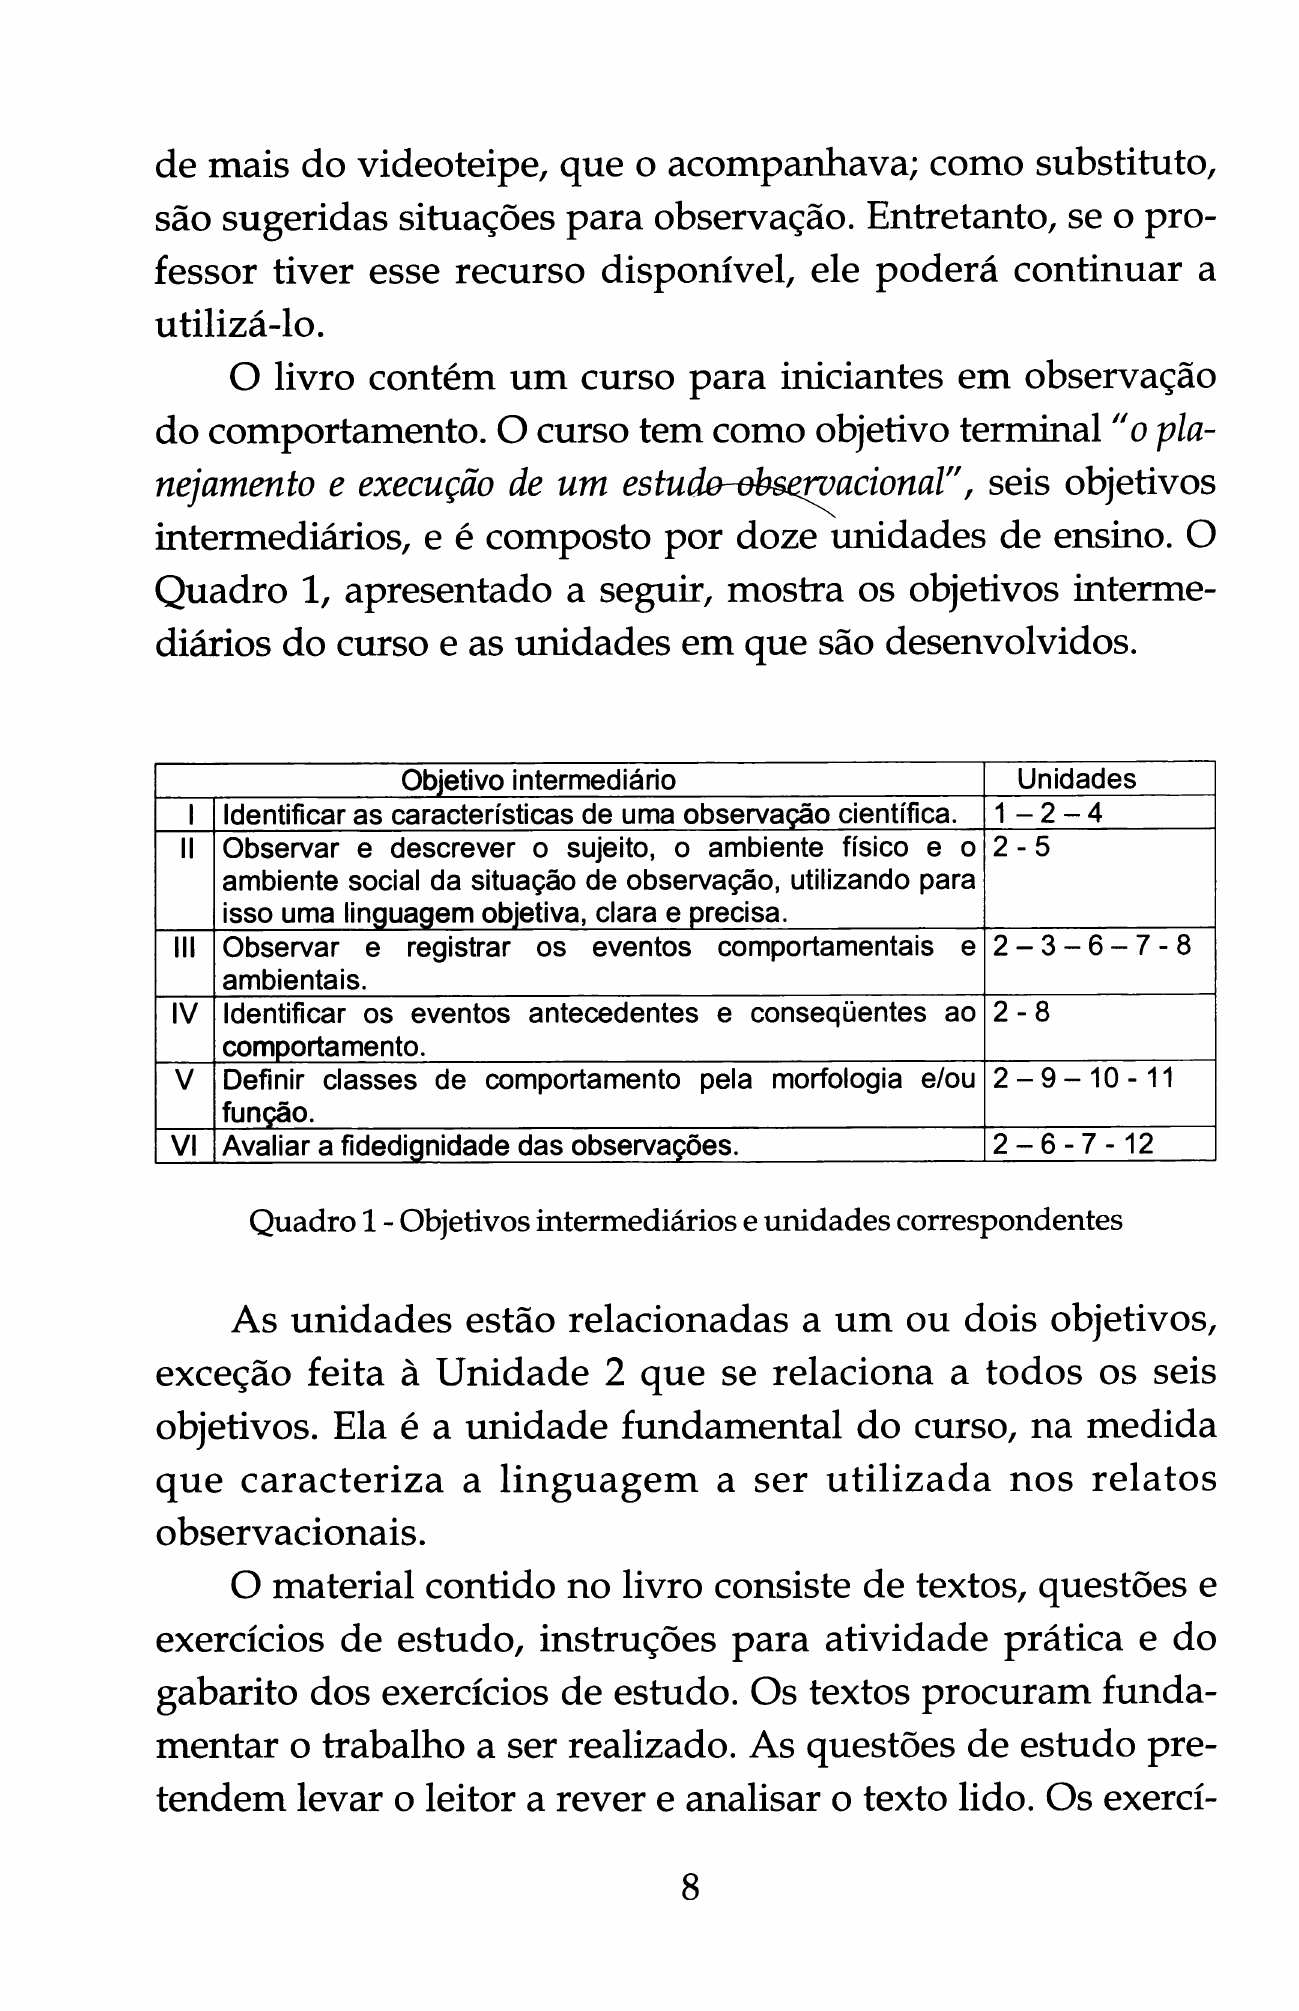 Danna, M. F. & Matos, M. A. (2011). Aprendendo a observar (Cap.1) - Análise  do Comportamento Humano